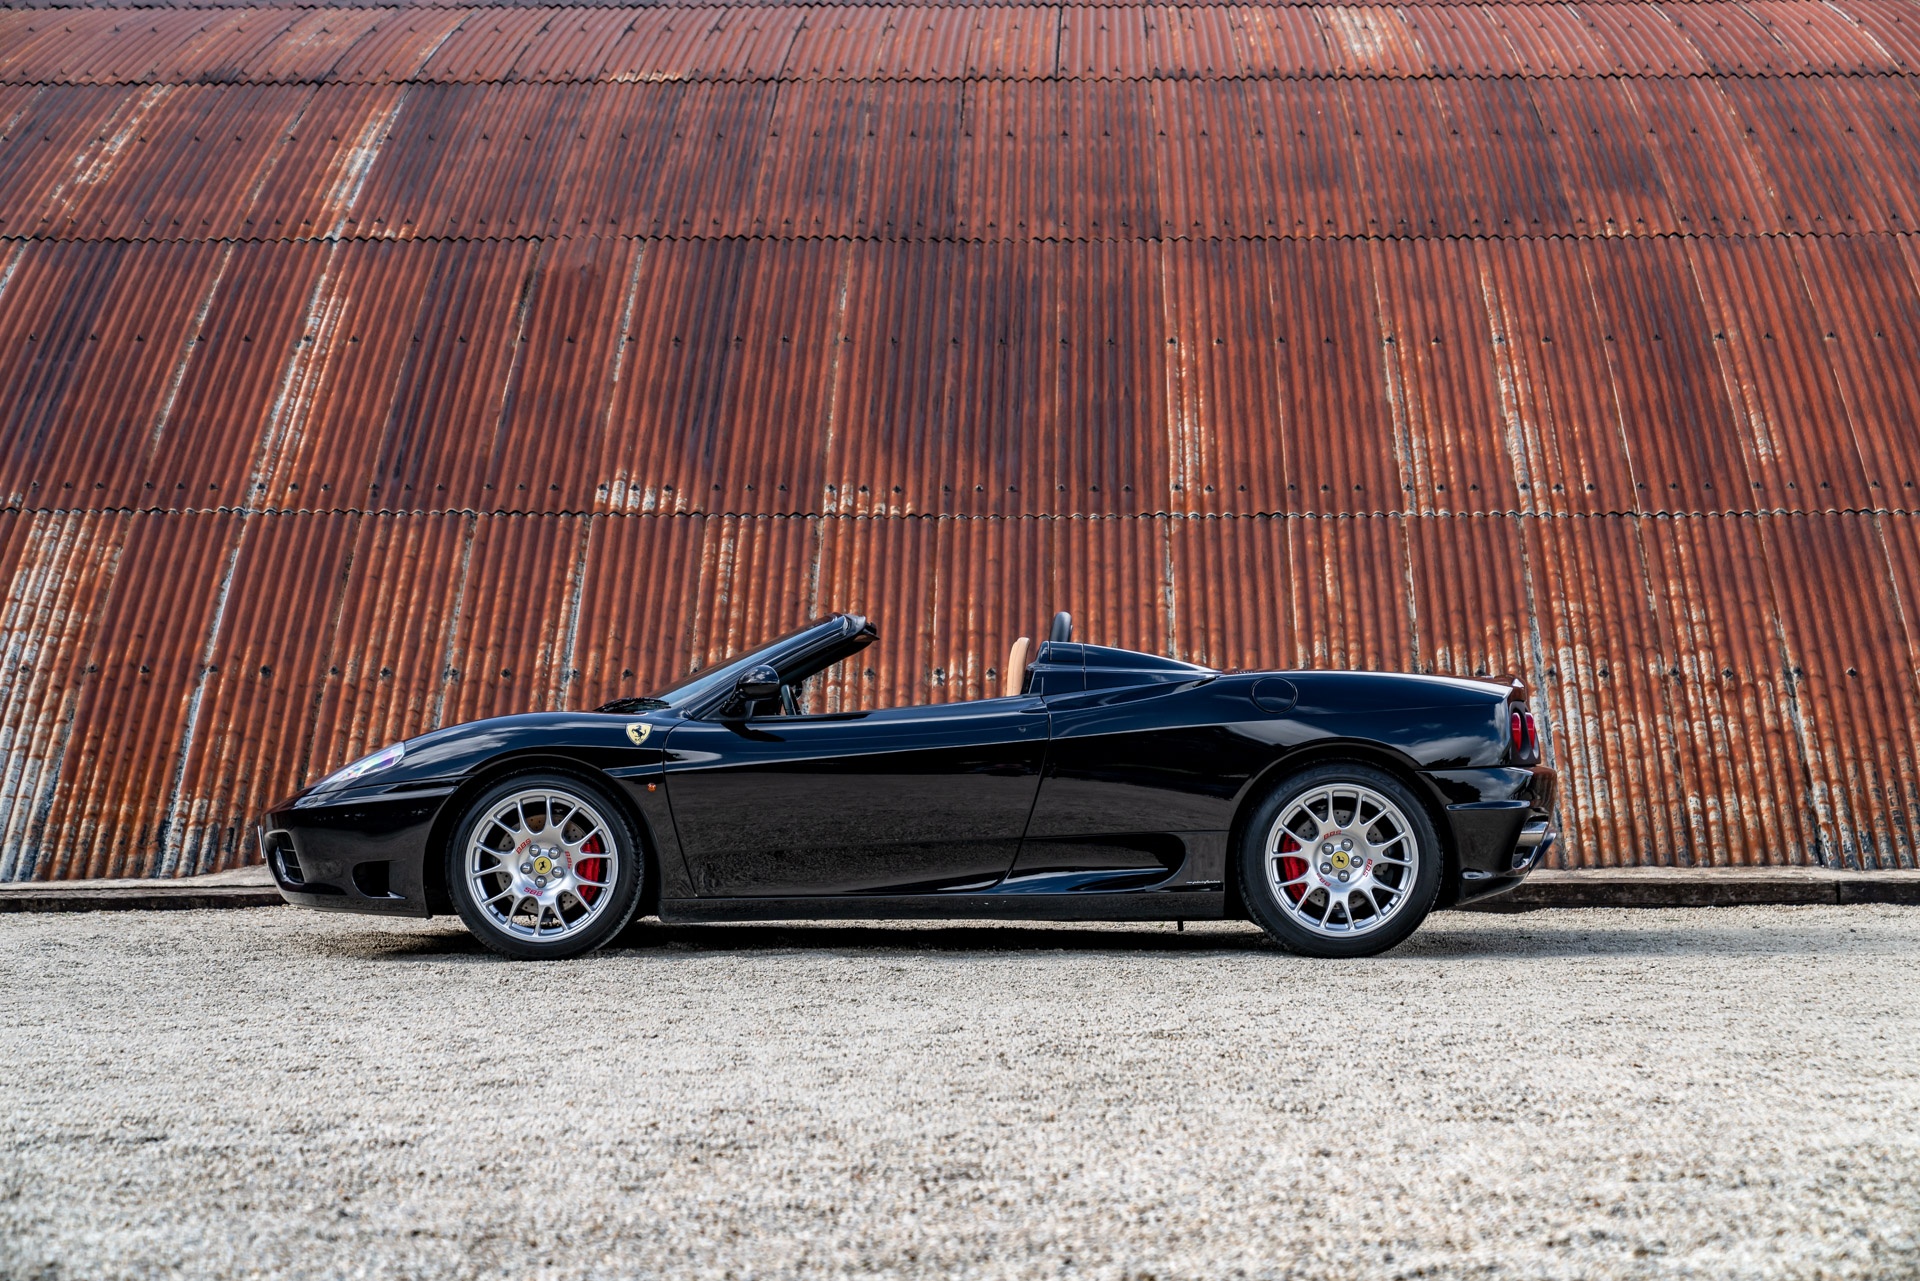 Chi tiết siêu xe Ferrari 360 Spider của David Beckham - ảnh 6